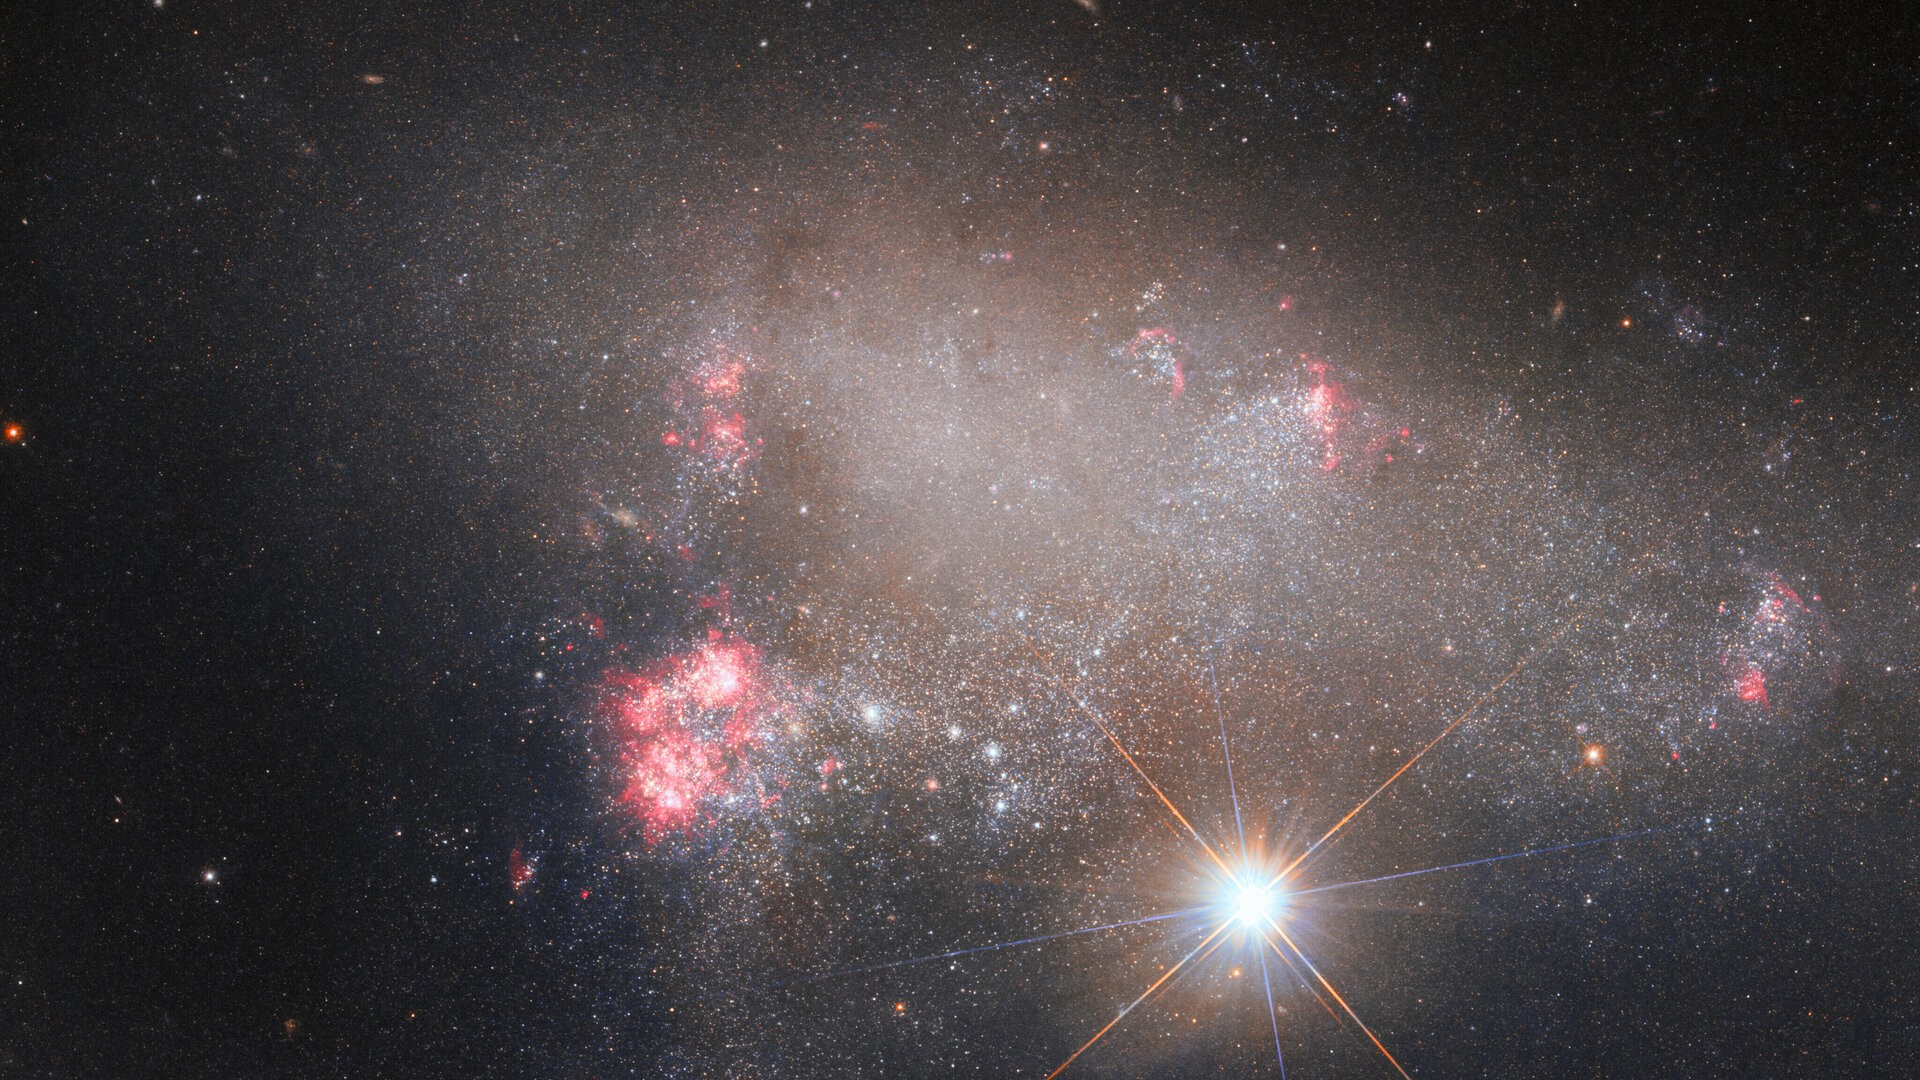 A galáxia irregular Arp 263 está no fundo desta imagem obtida pelo Telescópio Espacial Hubble, que é dominada pela brilhante estrela BD+17 2217. Arp 263, também conhecida como NGC 3239, é uma galáxia irregular repleta de regiões de formação estelar recente. Acredita-se que sua aparência se deve ao fato de ela ter se formado a partir da fusão de duas galáxias. NGC 3239 está a cerca de 25 milhões de anos-luz de distância, na direção da Constelação de Leão